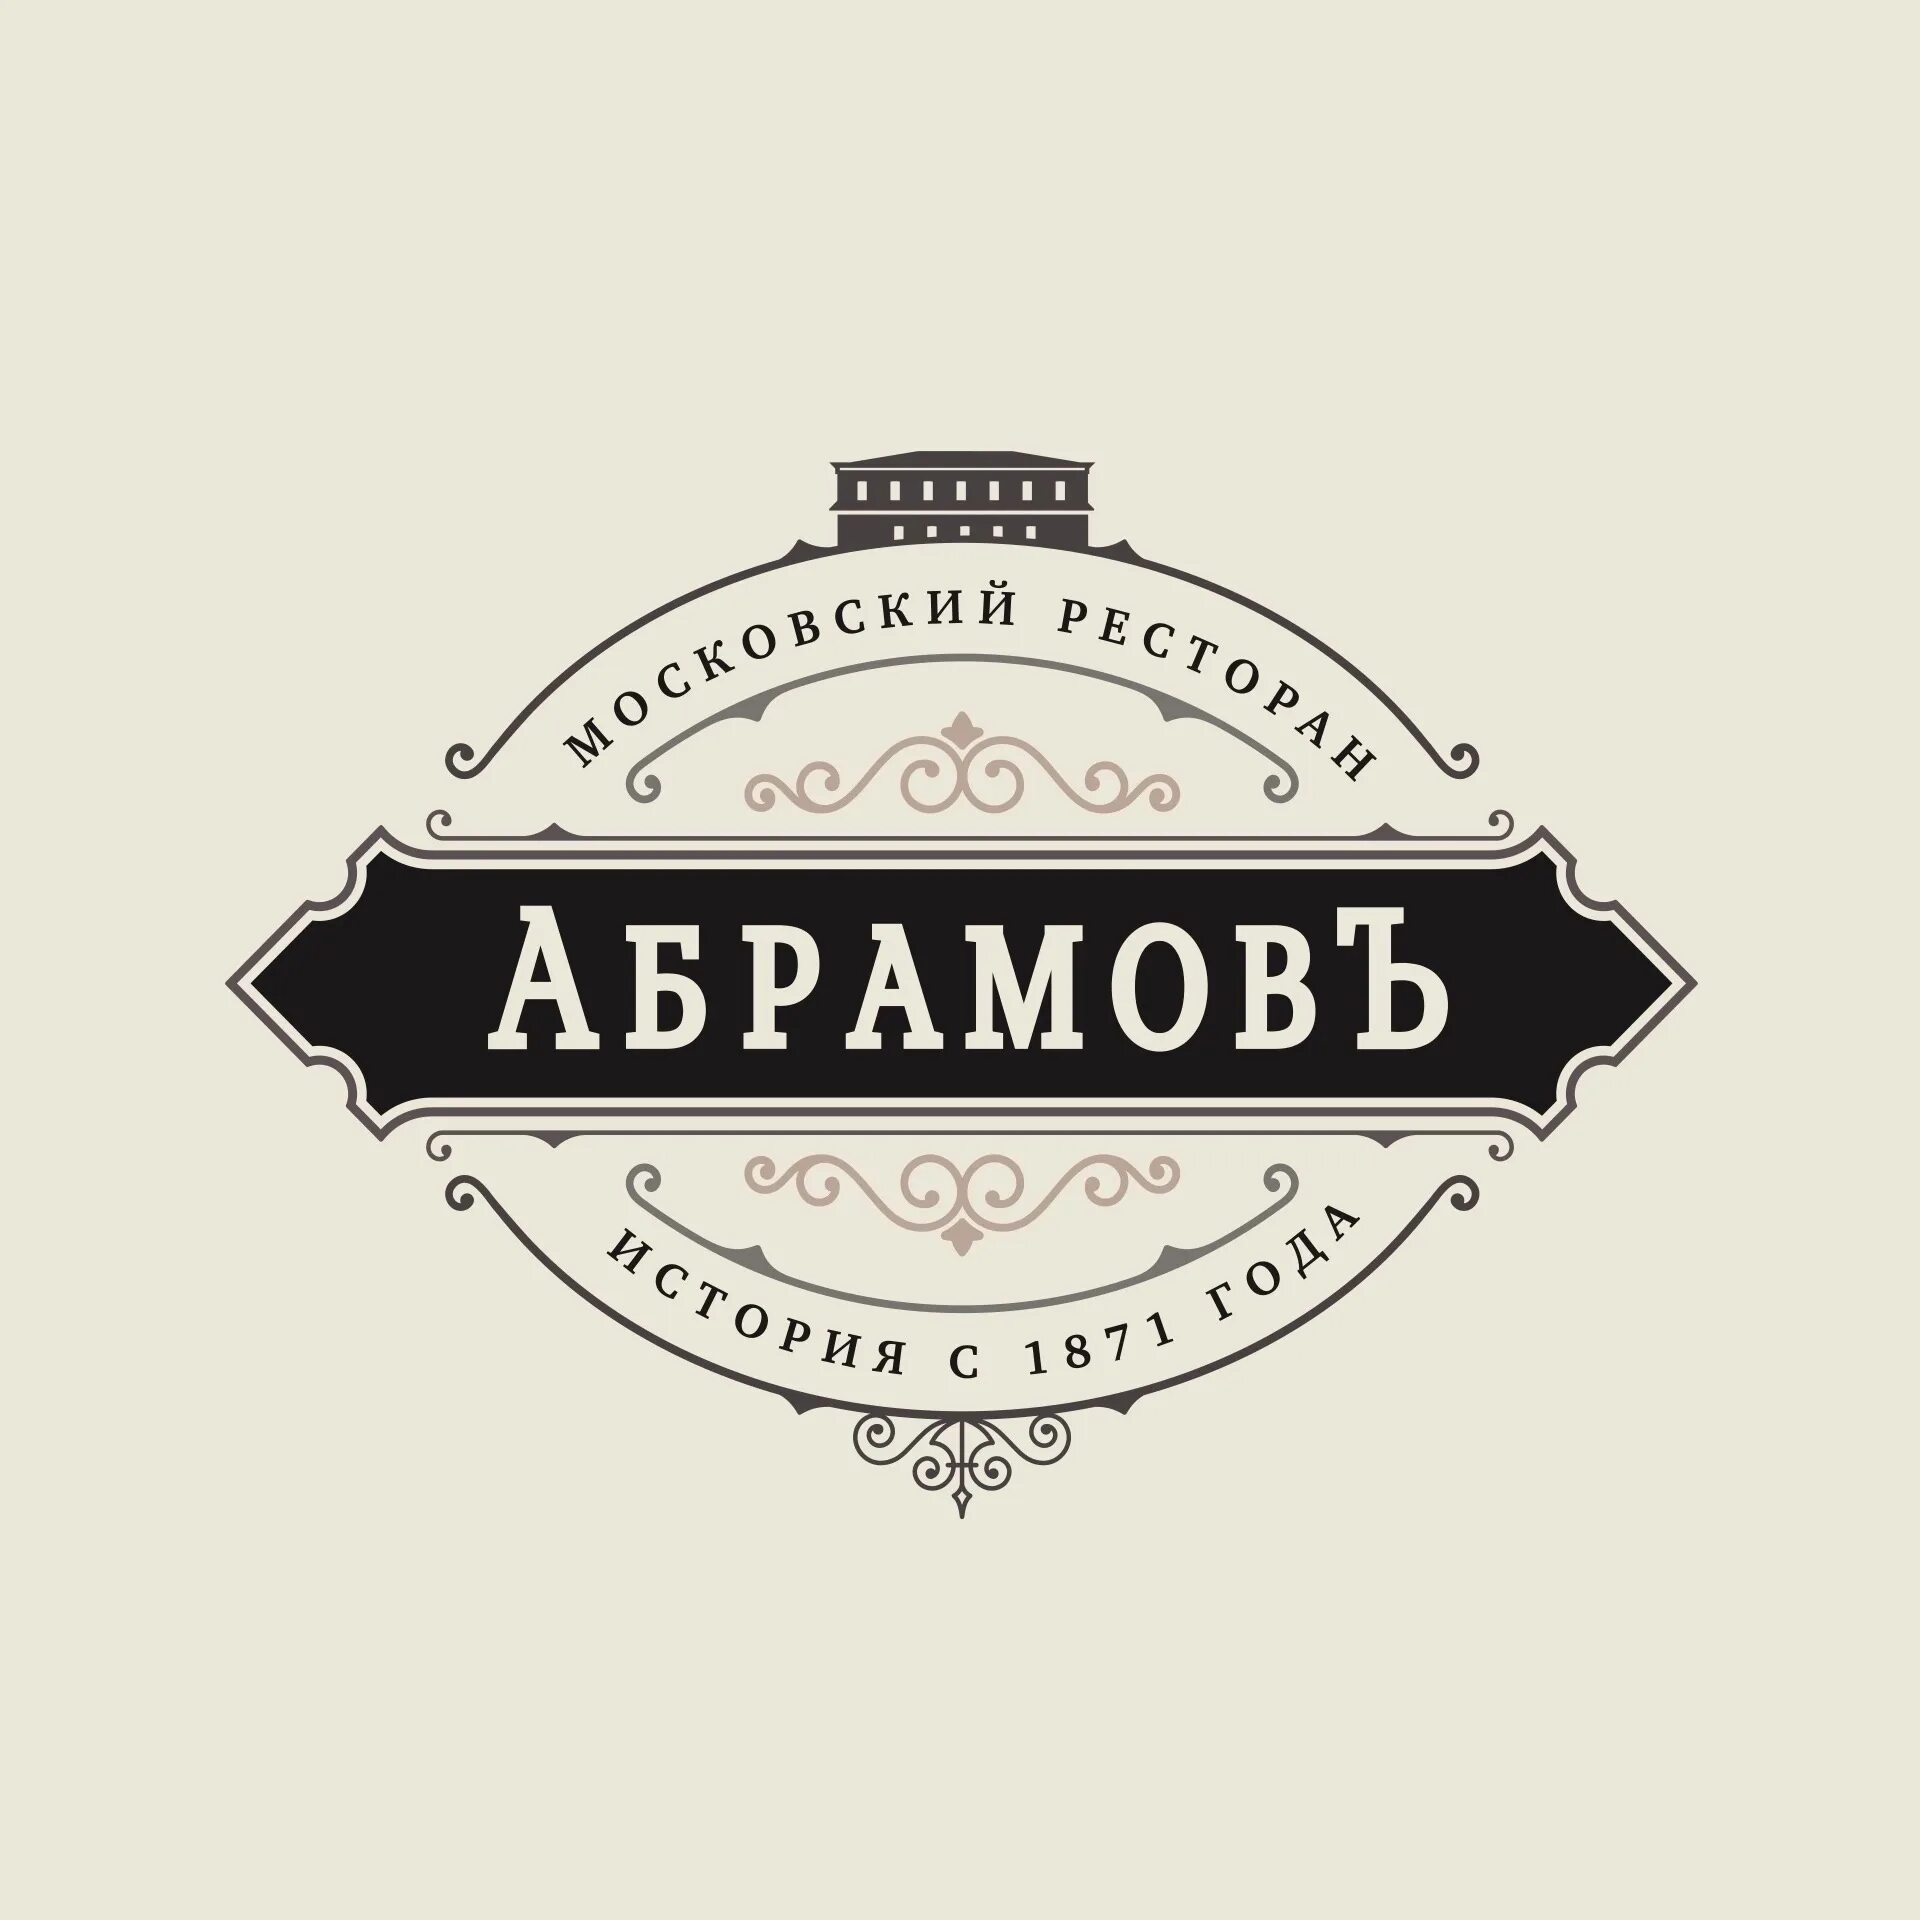 Абрамов большая полянка. Ресторан Абрамов. Ресторан Абрамов Москва. Абрамов ресторан Москва логотип. Ресторан на полянке Абрамов логотип.